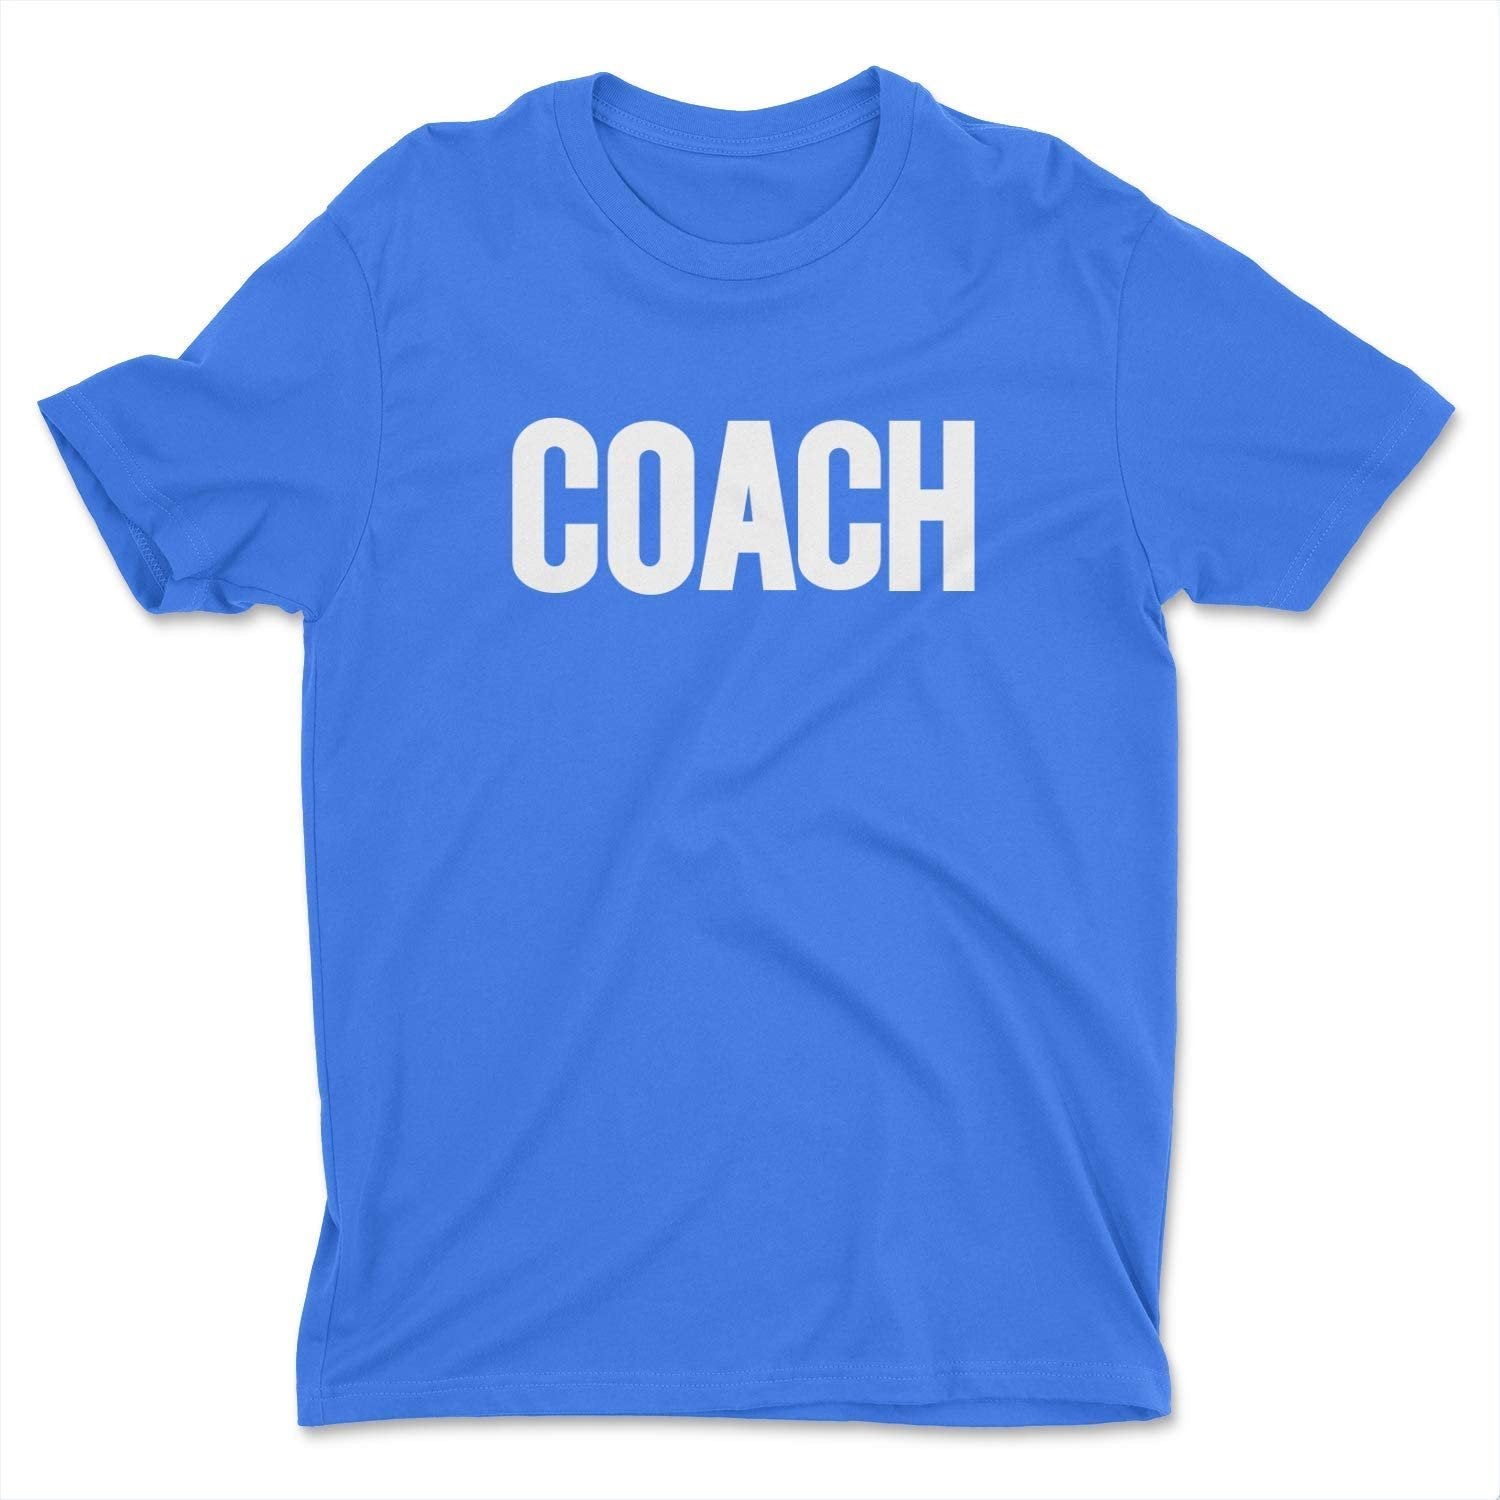 T-shirt Coach pour hommes (conception solide, bleu royal et blanc)